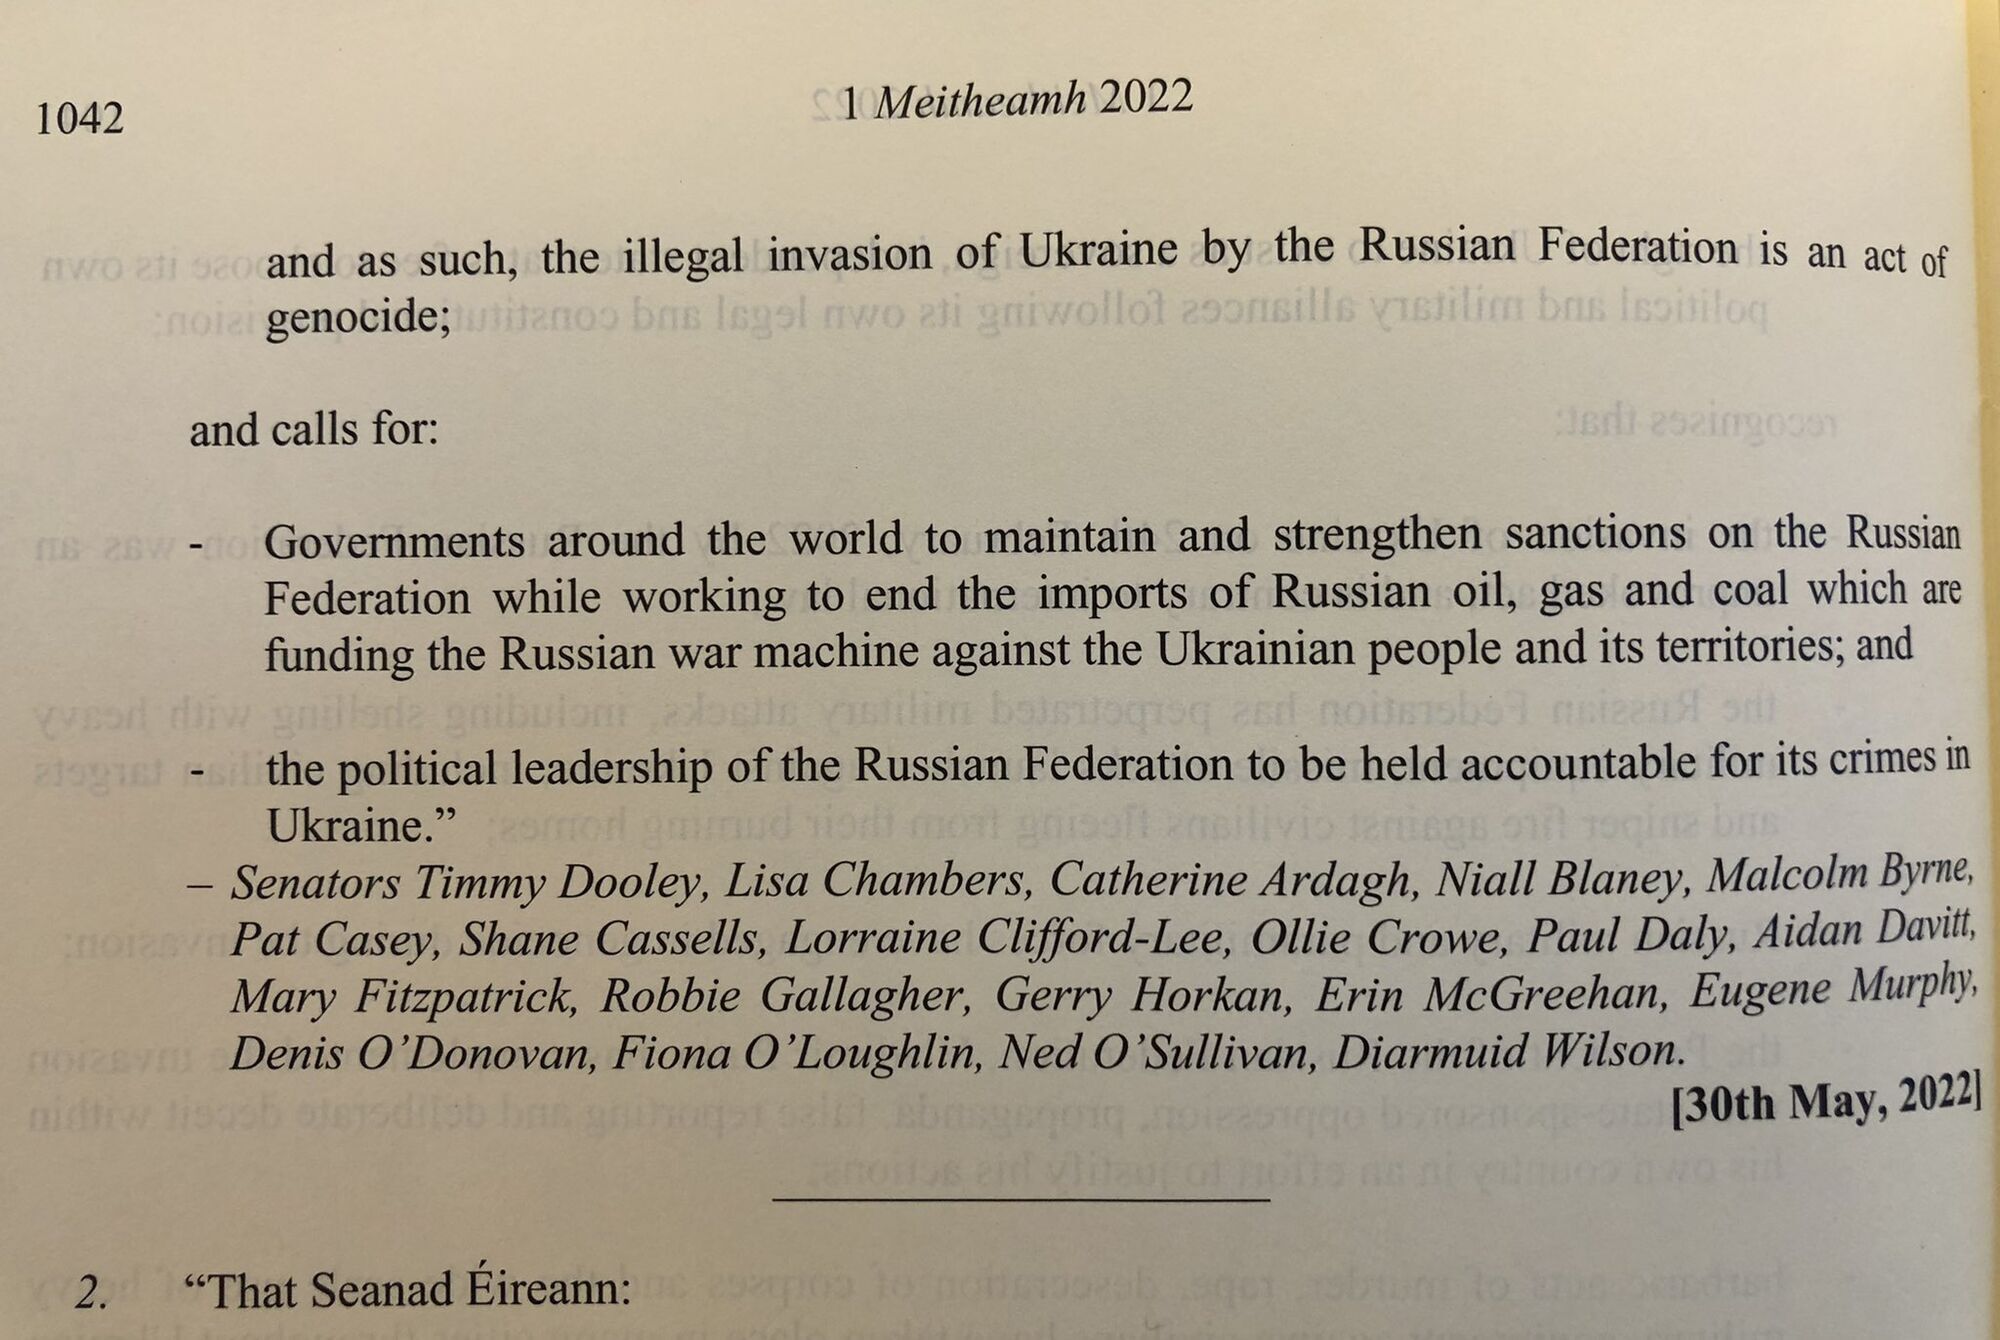 В документе четко указано, что действия РФ в Украине - это геноцид